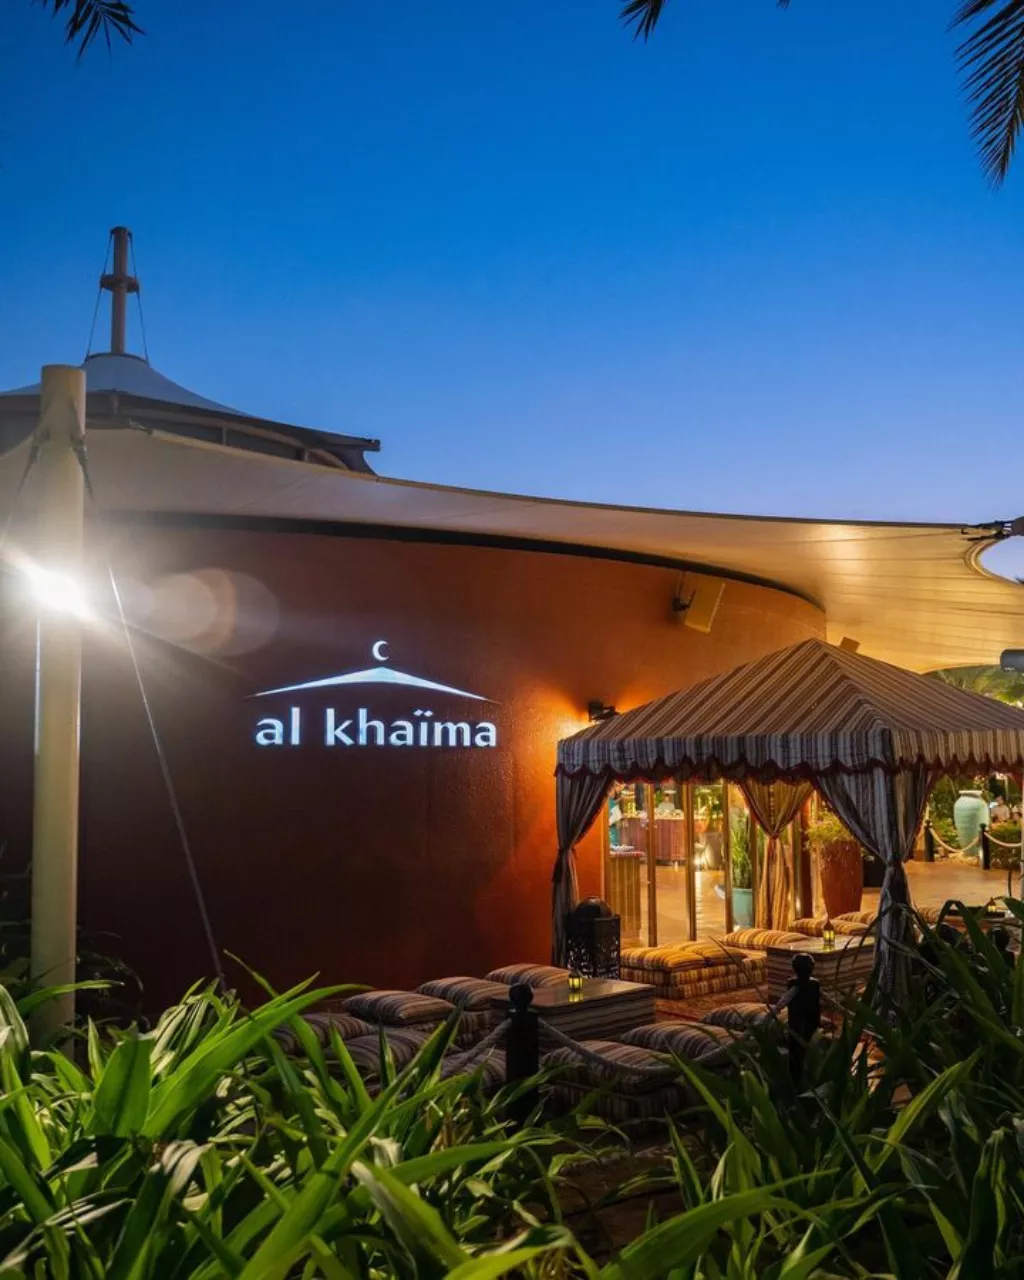 Al Khaima Arabic restaurant